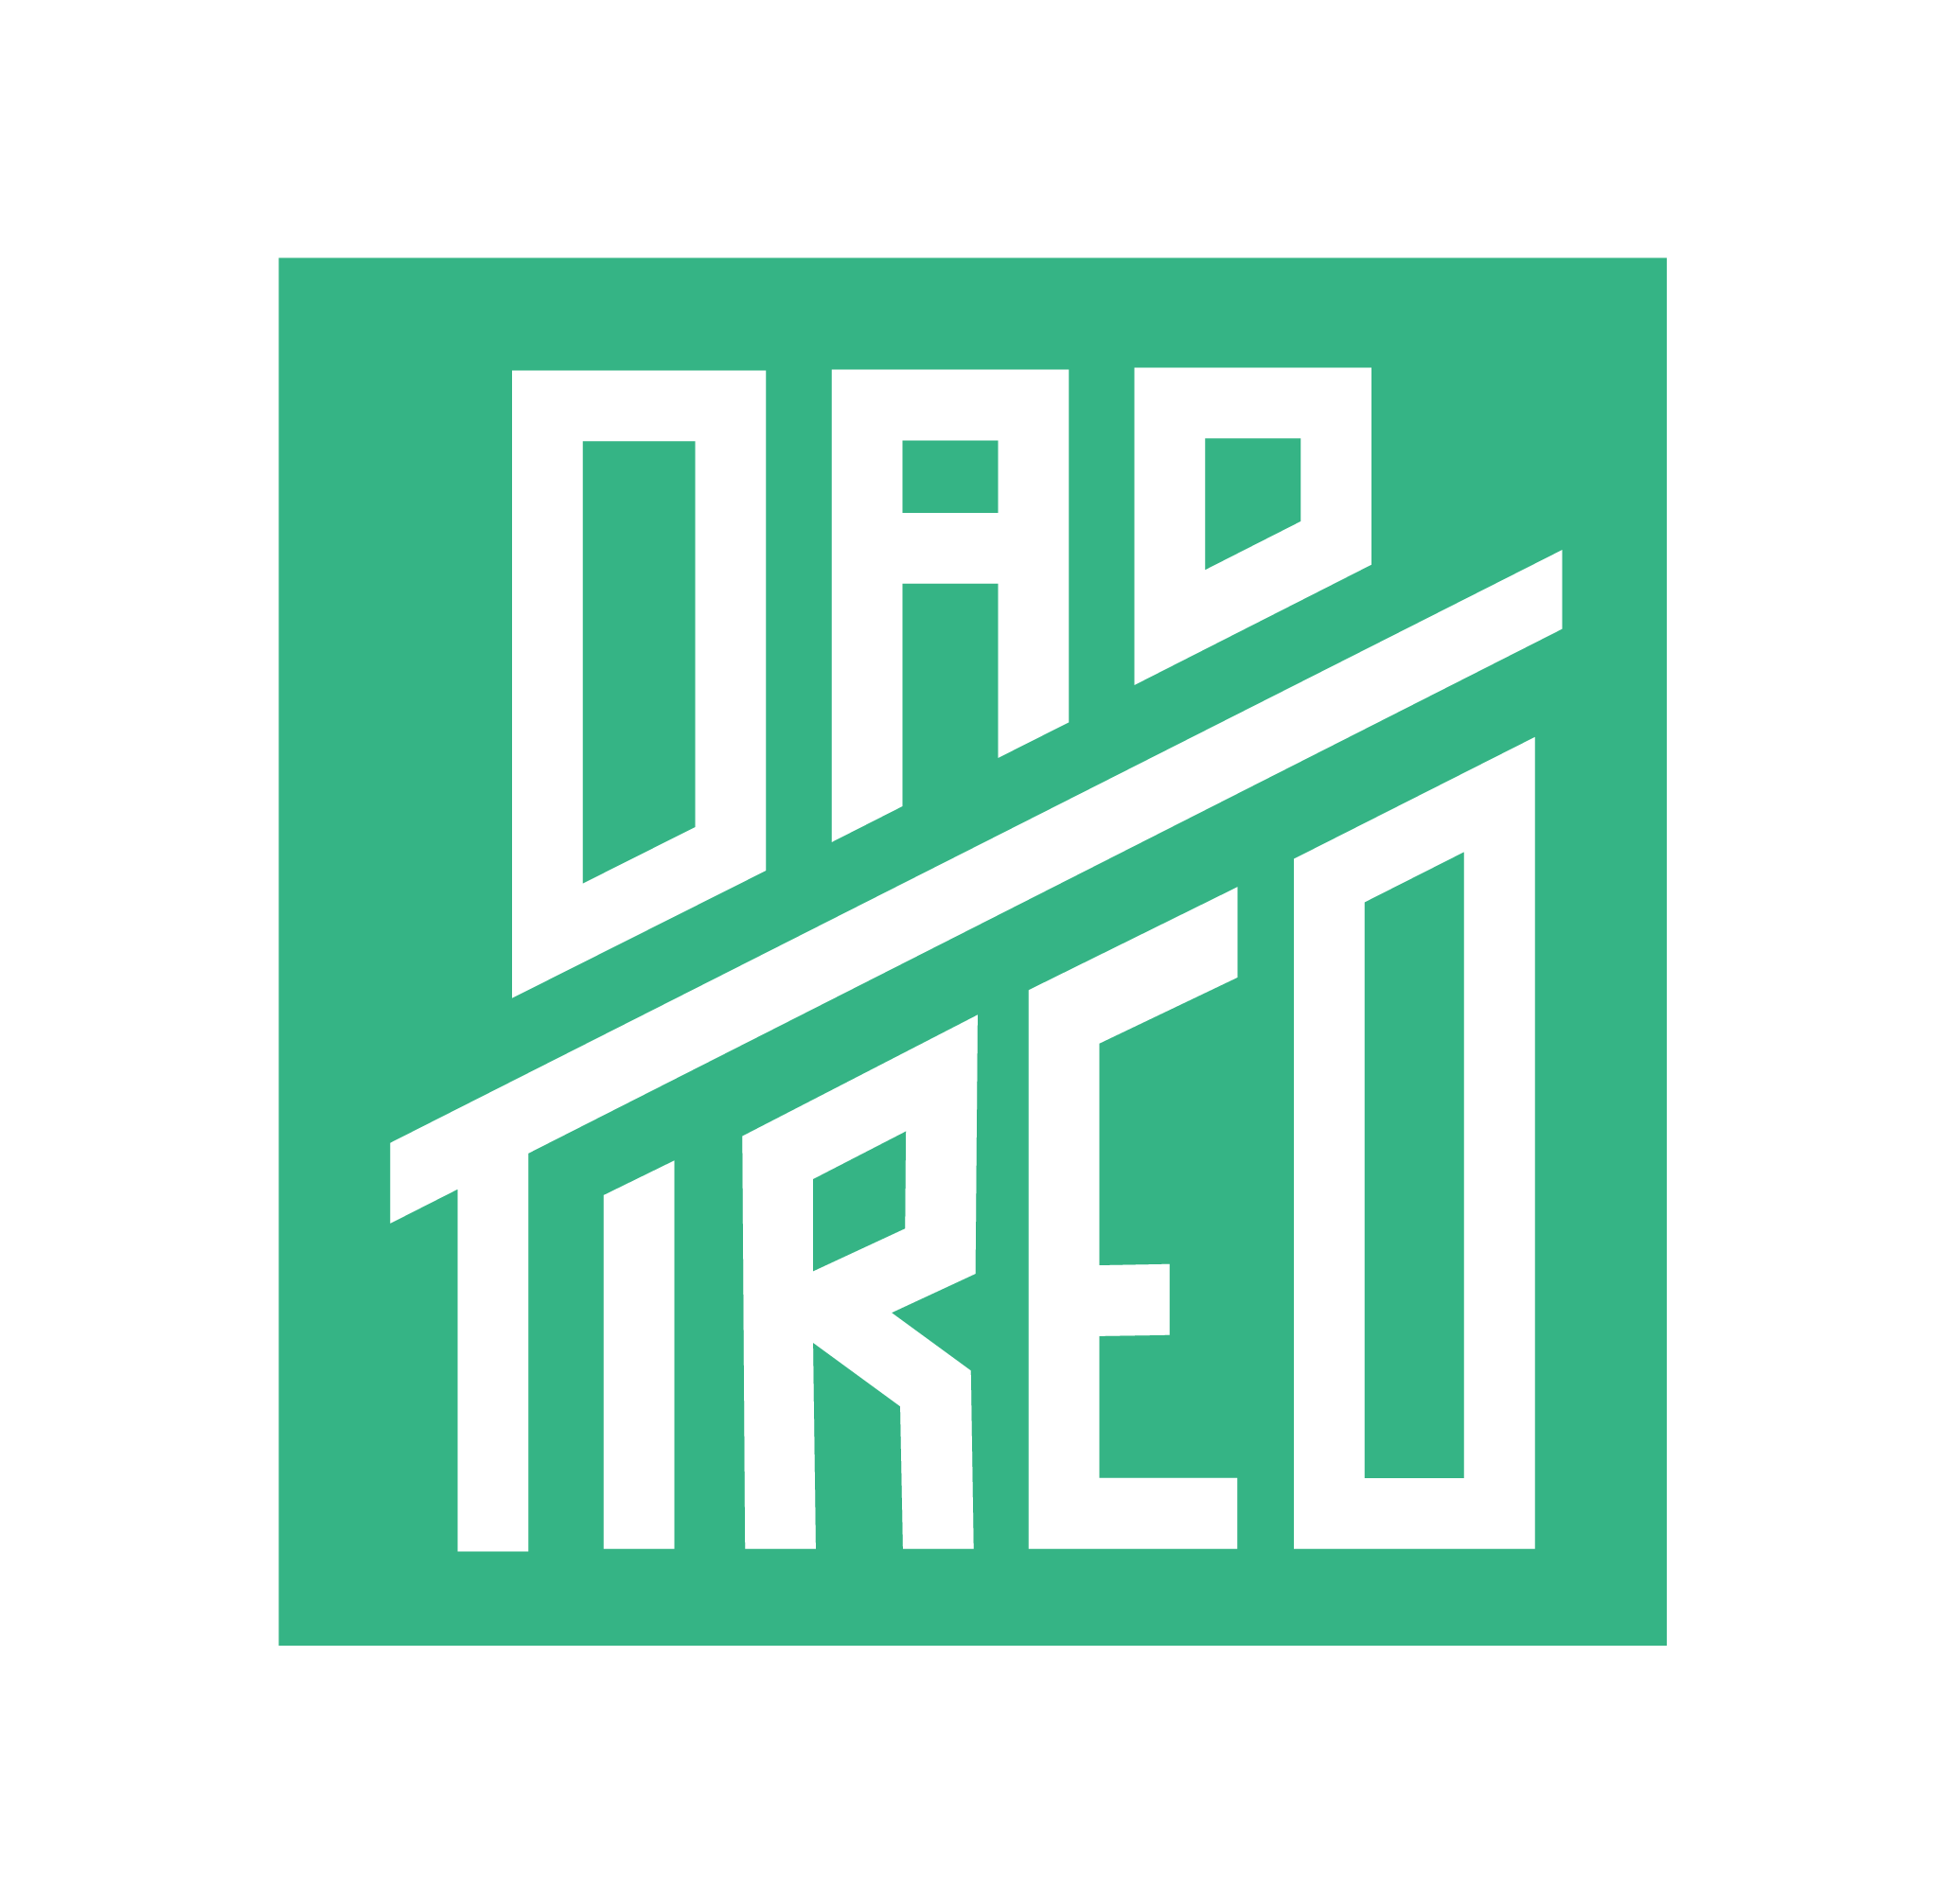 Dad Tired logo